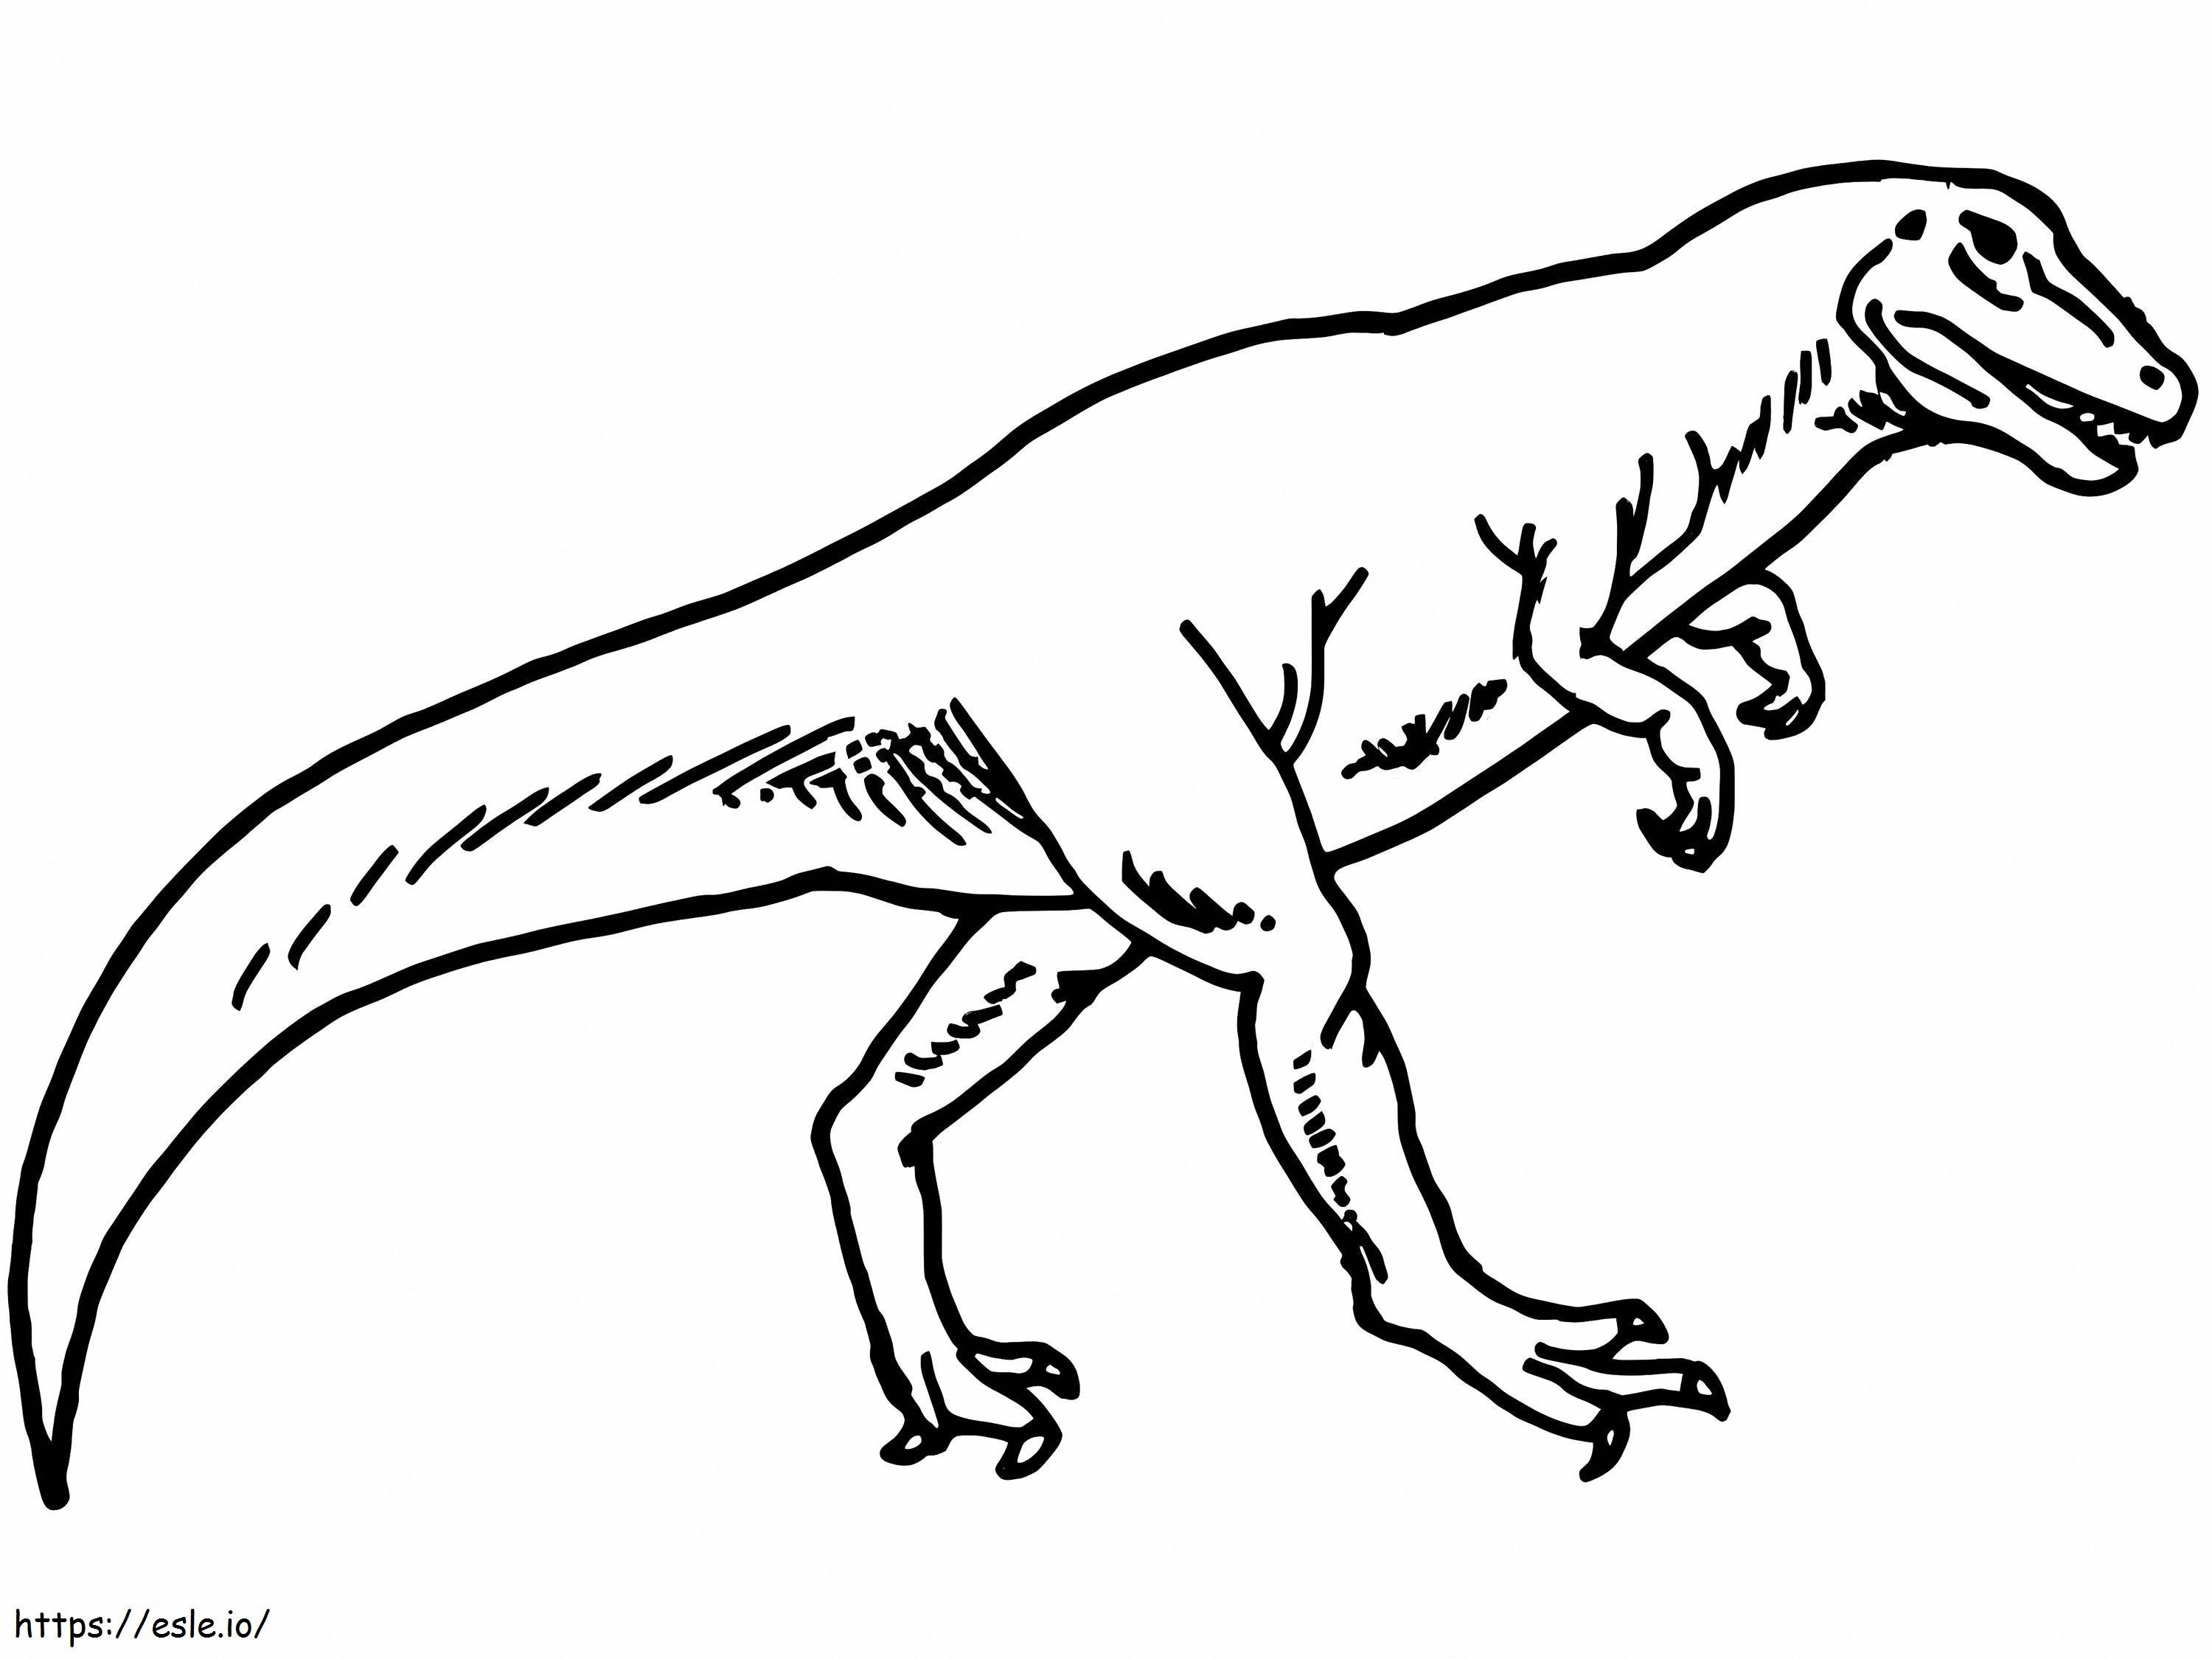 Dinossauro Alossauro 1 1024X768 para colorir